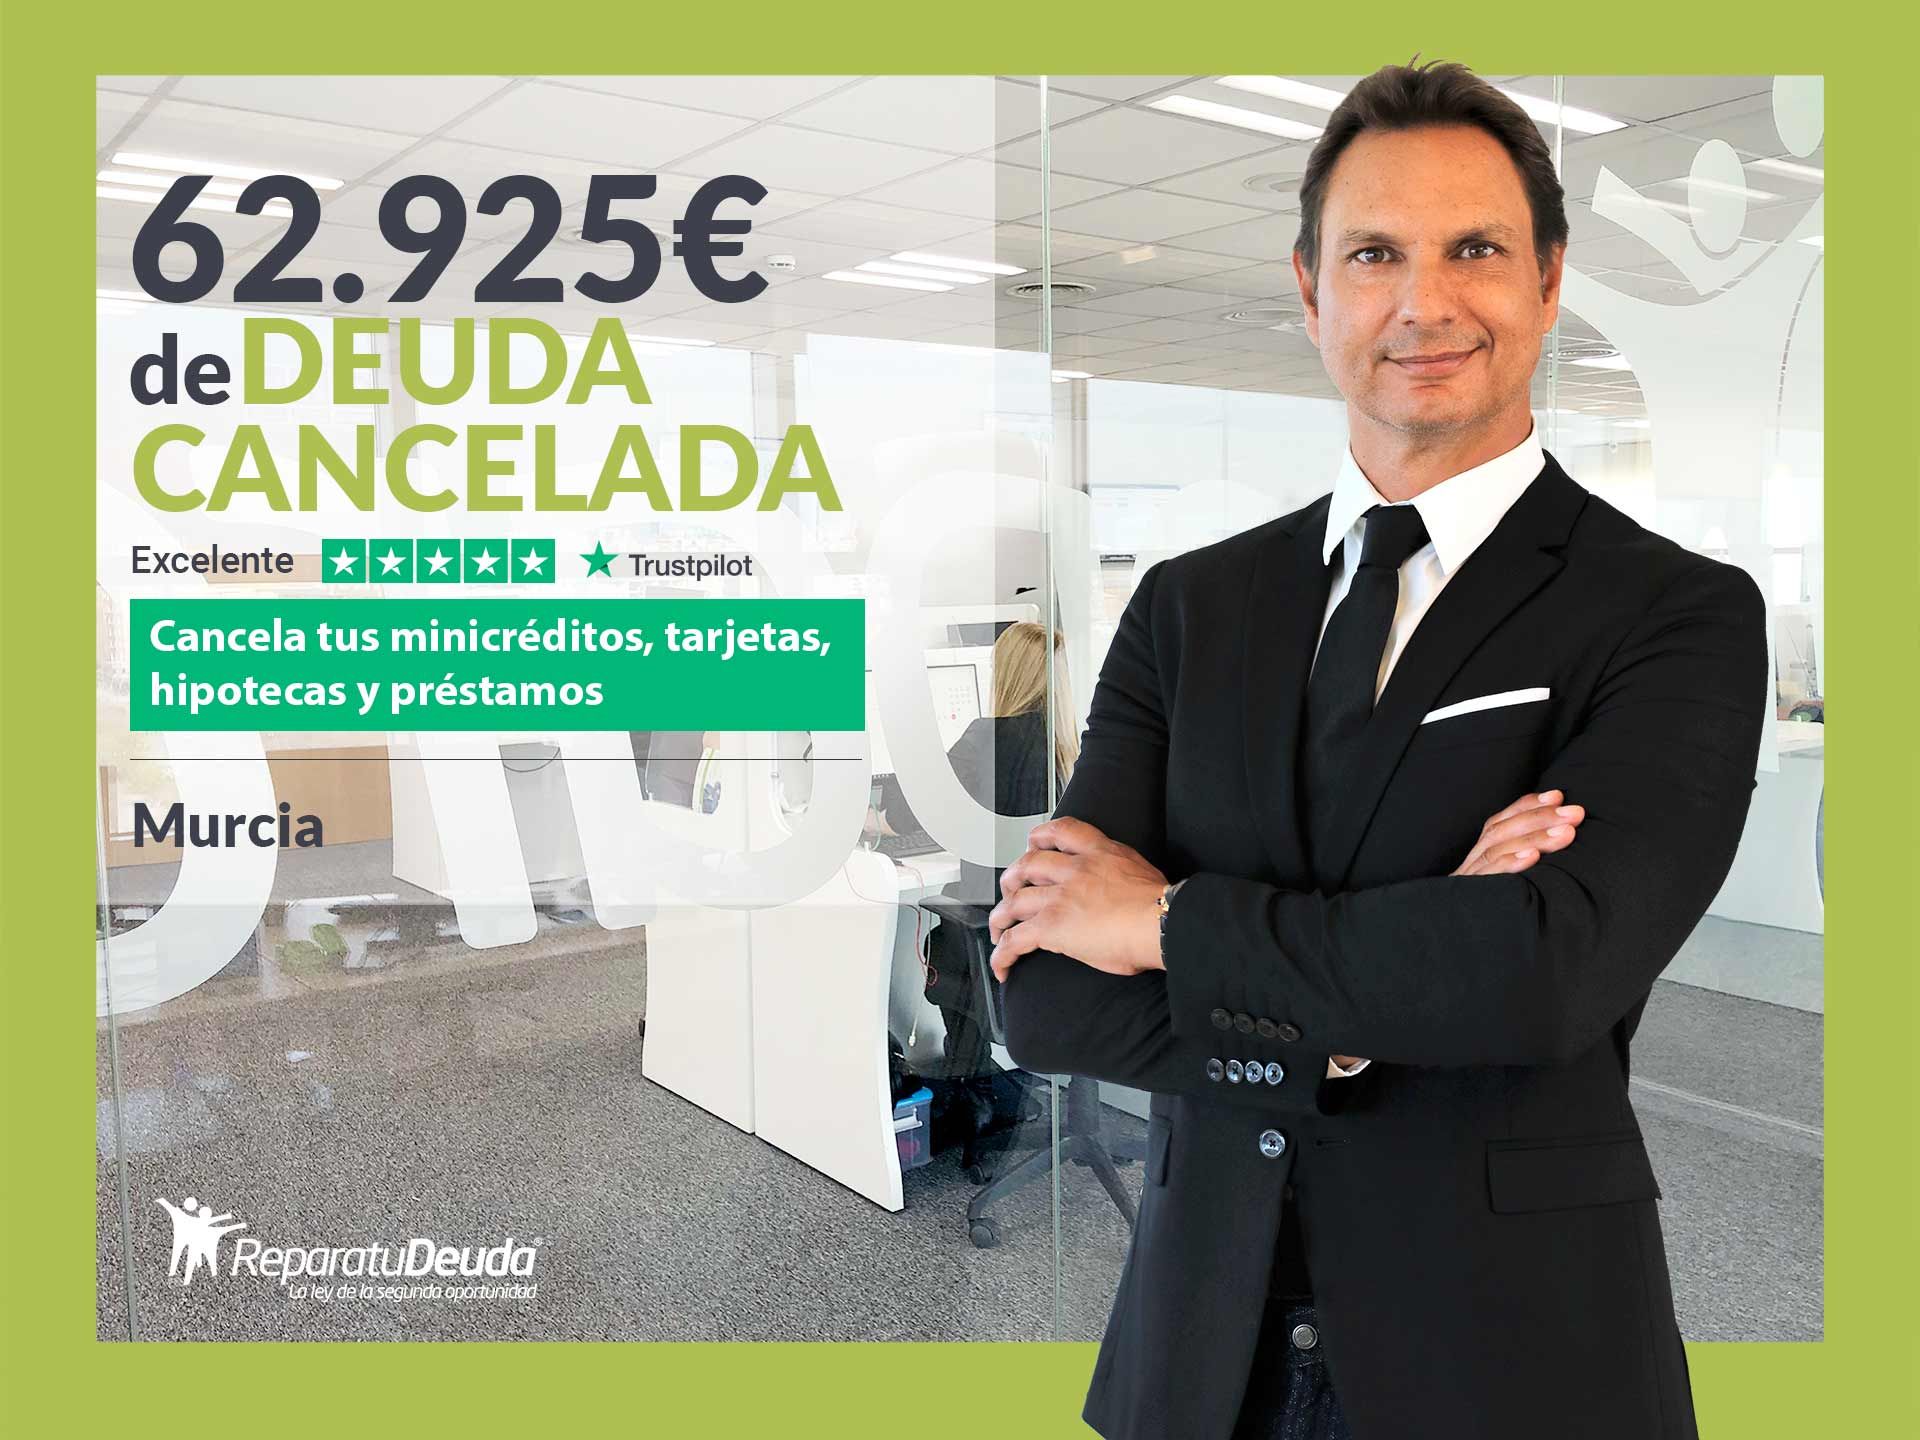 Repara tu Deuda Abogados cancela 62.925? en Murcia con la Ley de Segunda Oportunidad